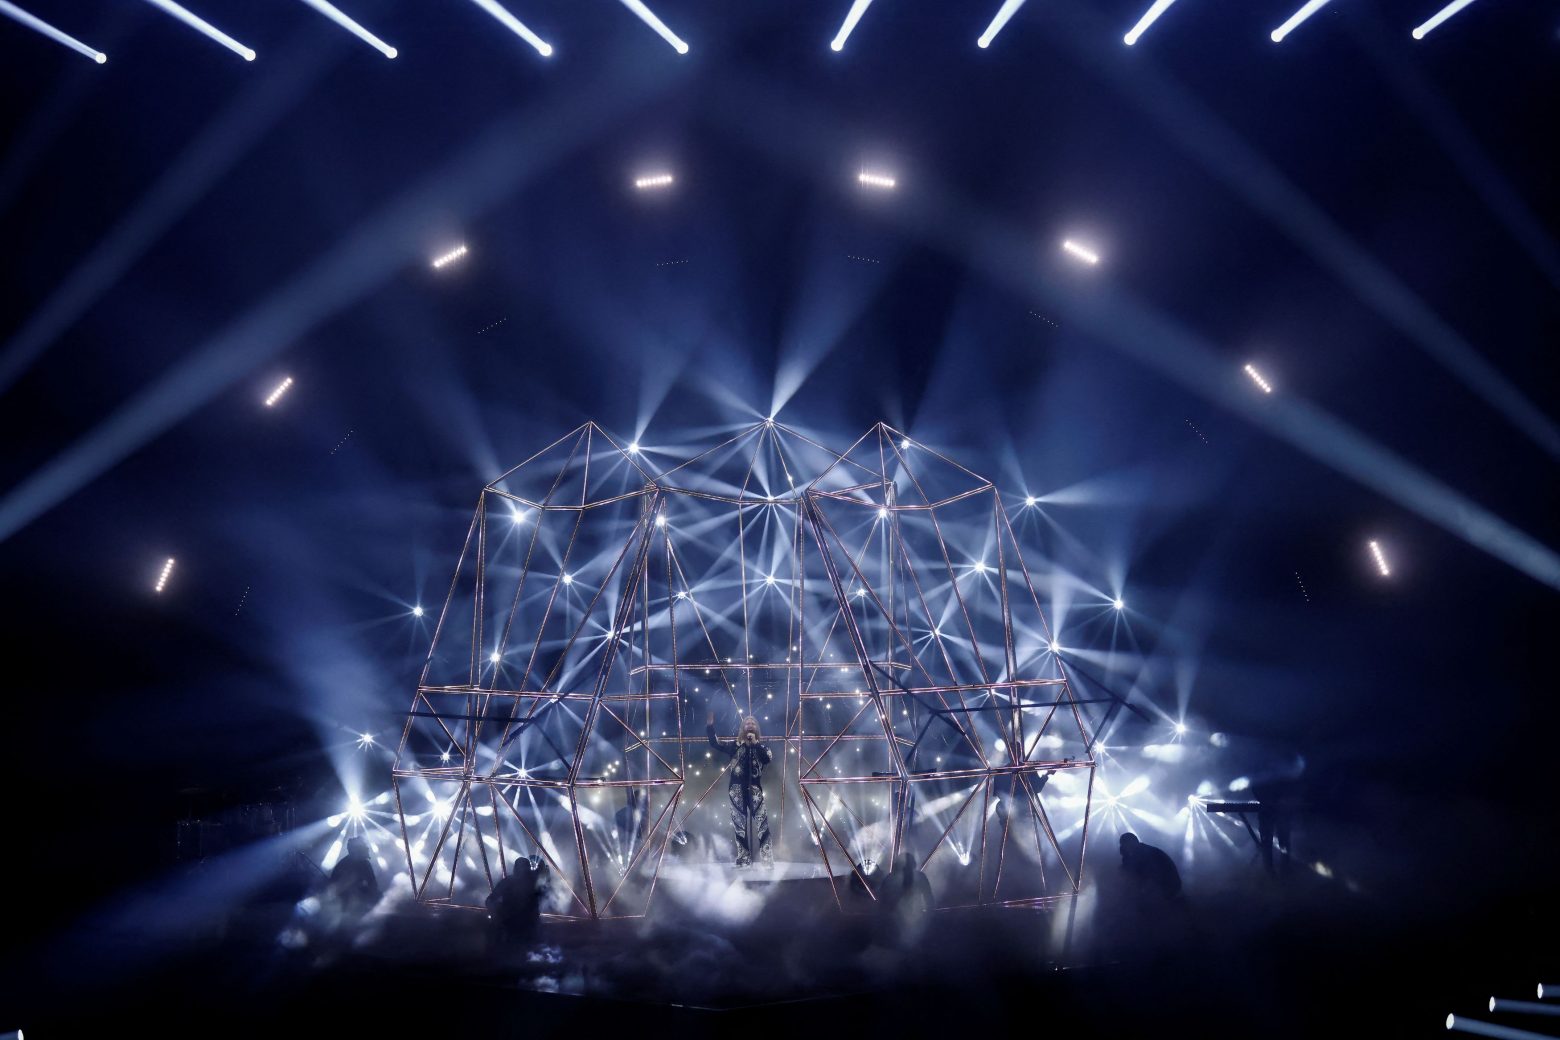 Eurovision 2022: Ολοκληρώθηκε το διαγωνιστικό κομμάτι - Ώρα αποτελεσμάτων